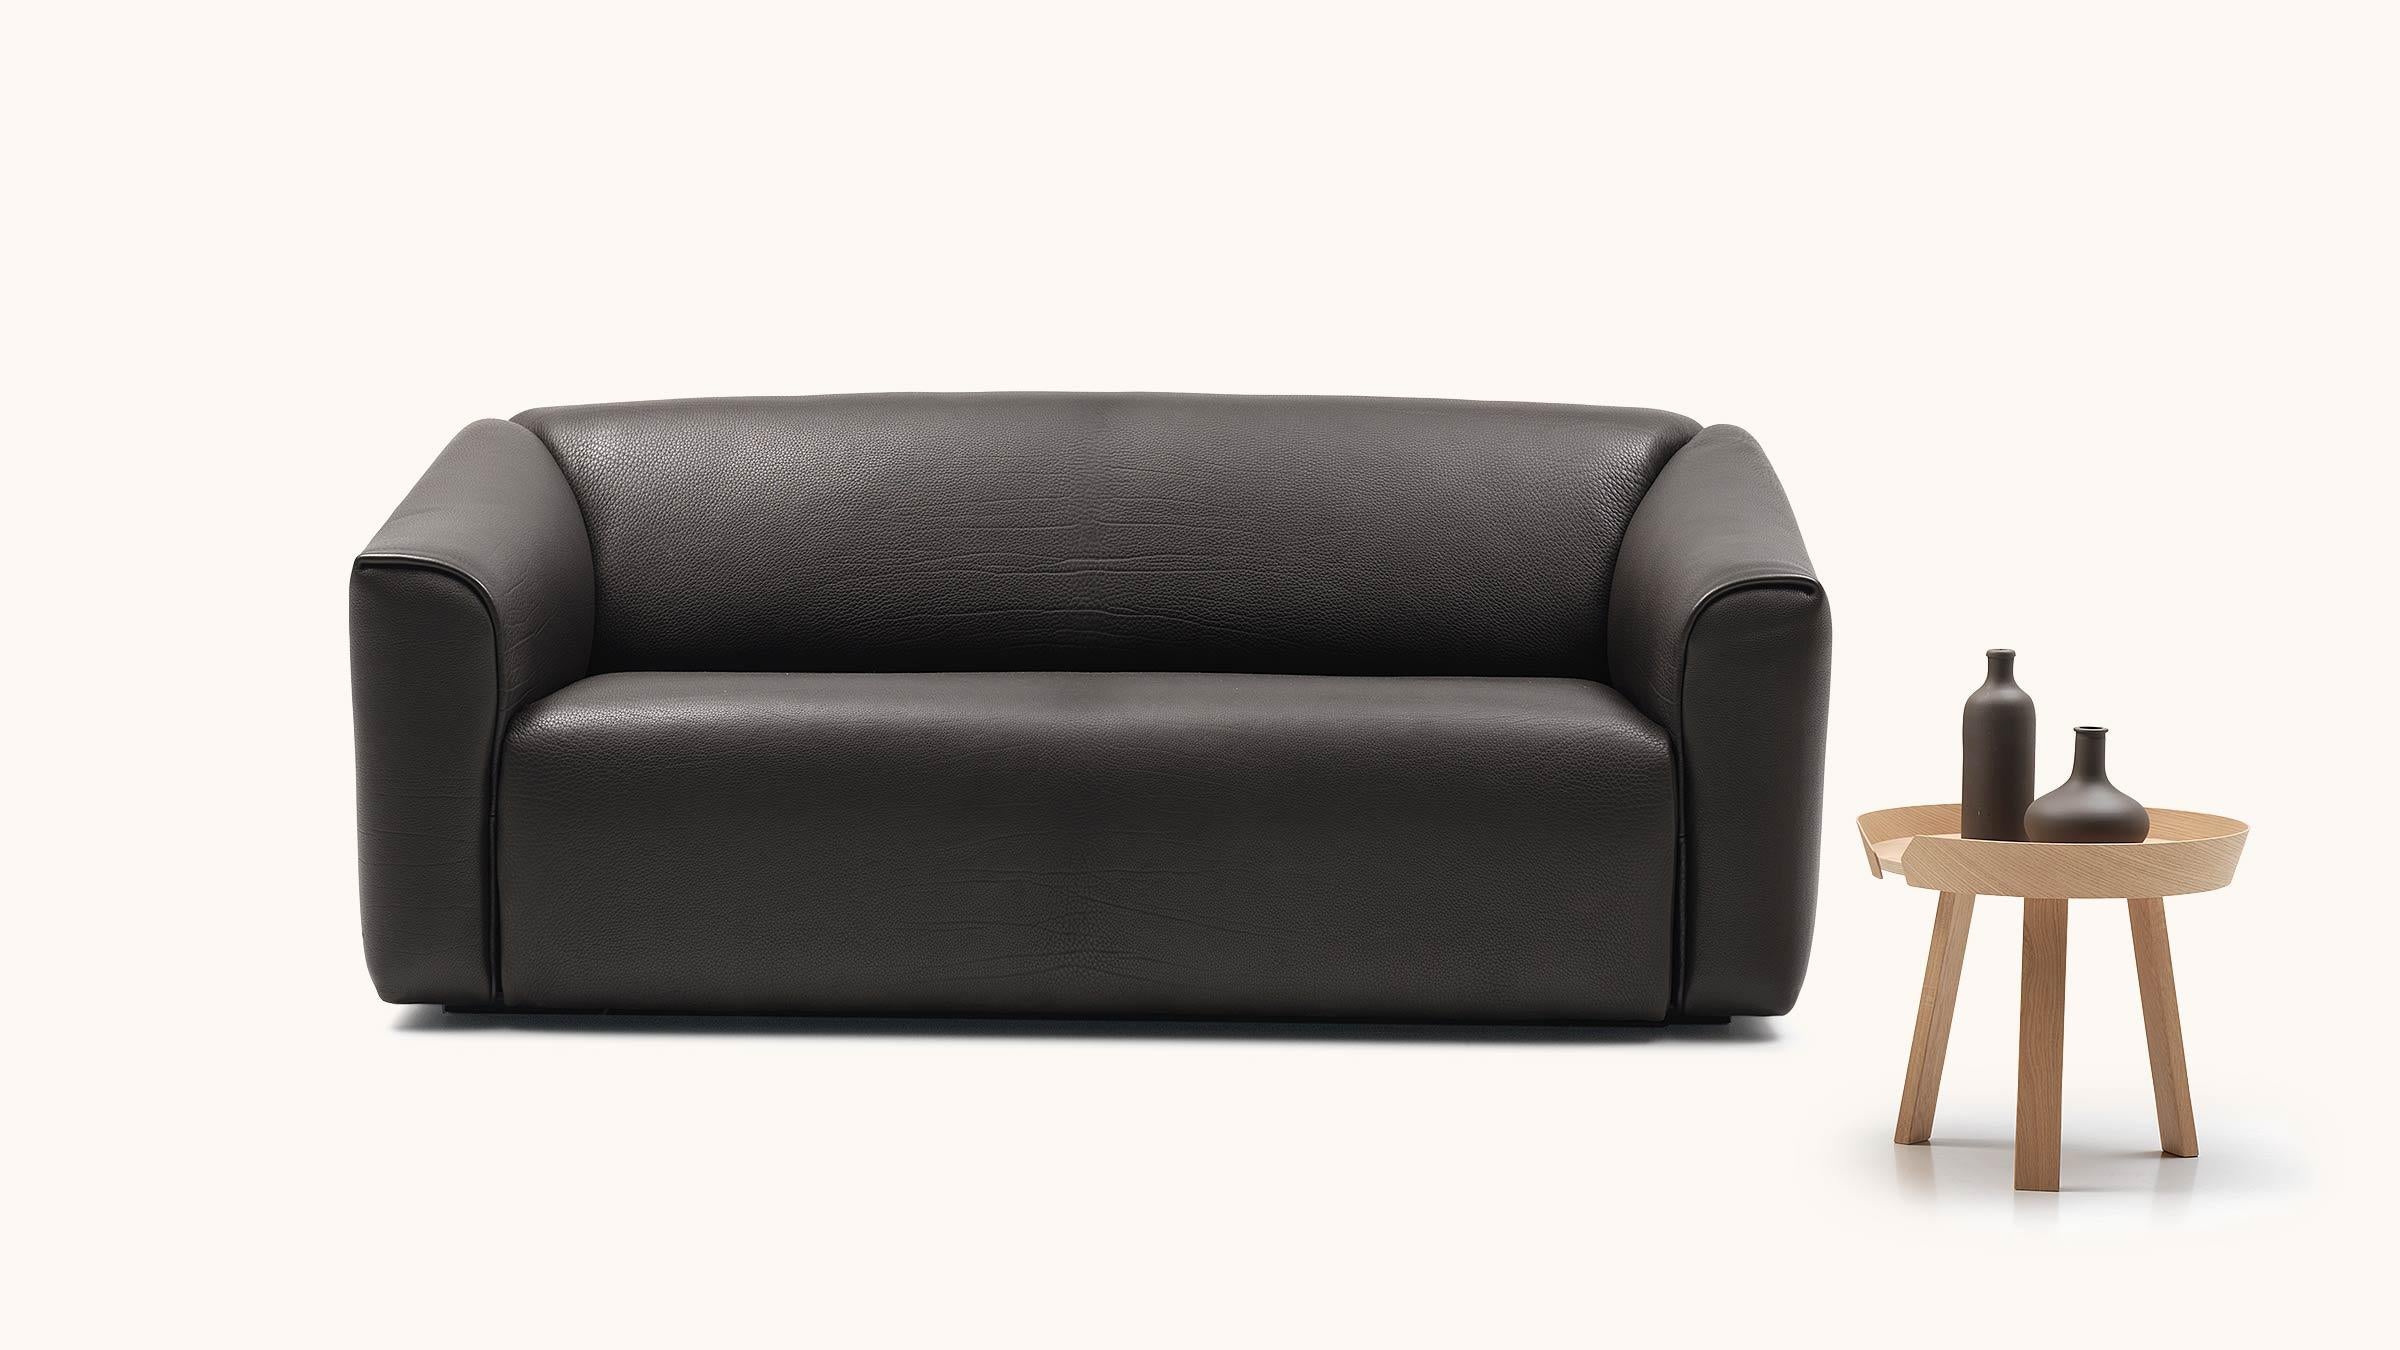 DS-47 ist als zwei- und dreisitziges Sofa sowie als Sessel und Hocker erhältlich. 5 mm dickes Nackenleder, erkennbar an den charakteristischen dicken Falten, verleiht ihm einen unverwechselbaren Ausdruck, der es leicht erkennbar macht. Für alle